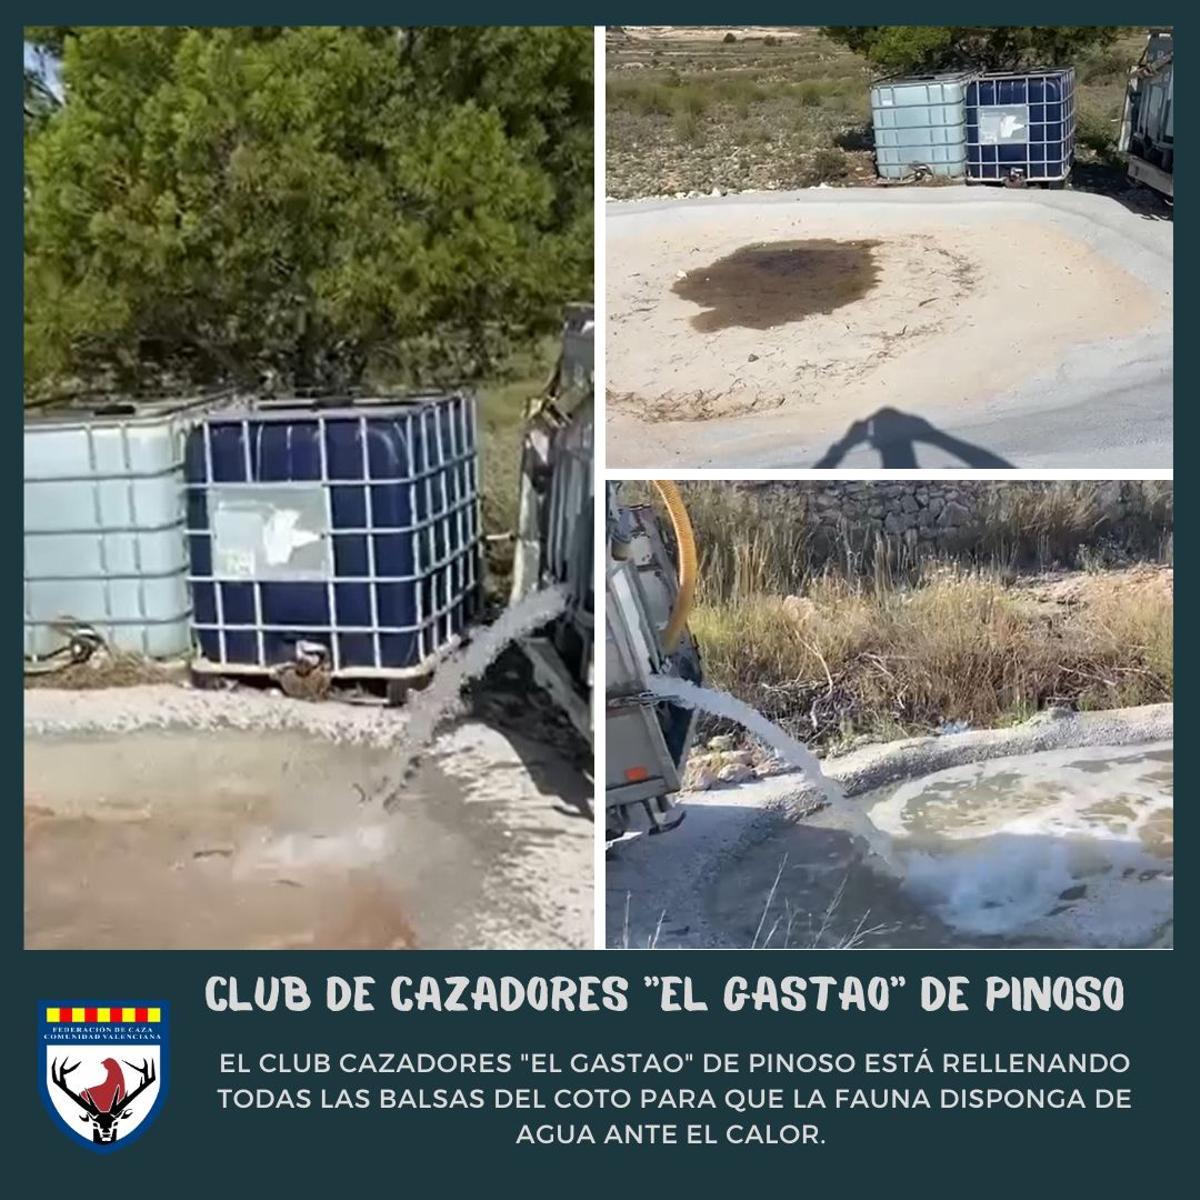 El Club de Cazadores &quot;El Gastao&quot; de Pinoso ha llenado todas las balsas del coto para que la fauna silvestre disponga de agua ante el sofocante calor de las últimas semanas.